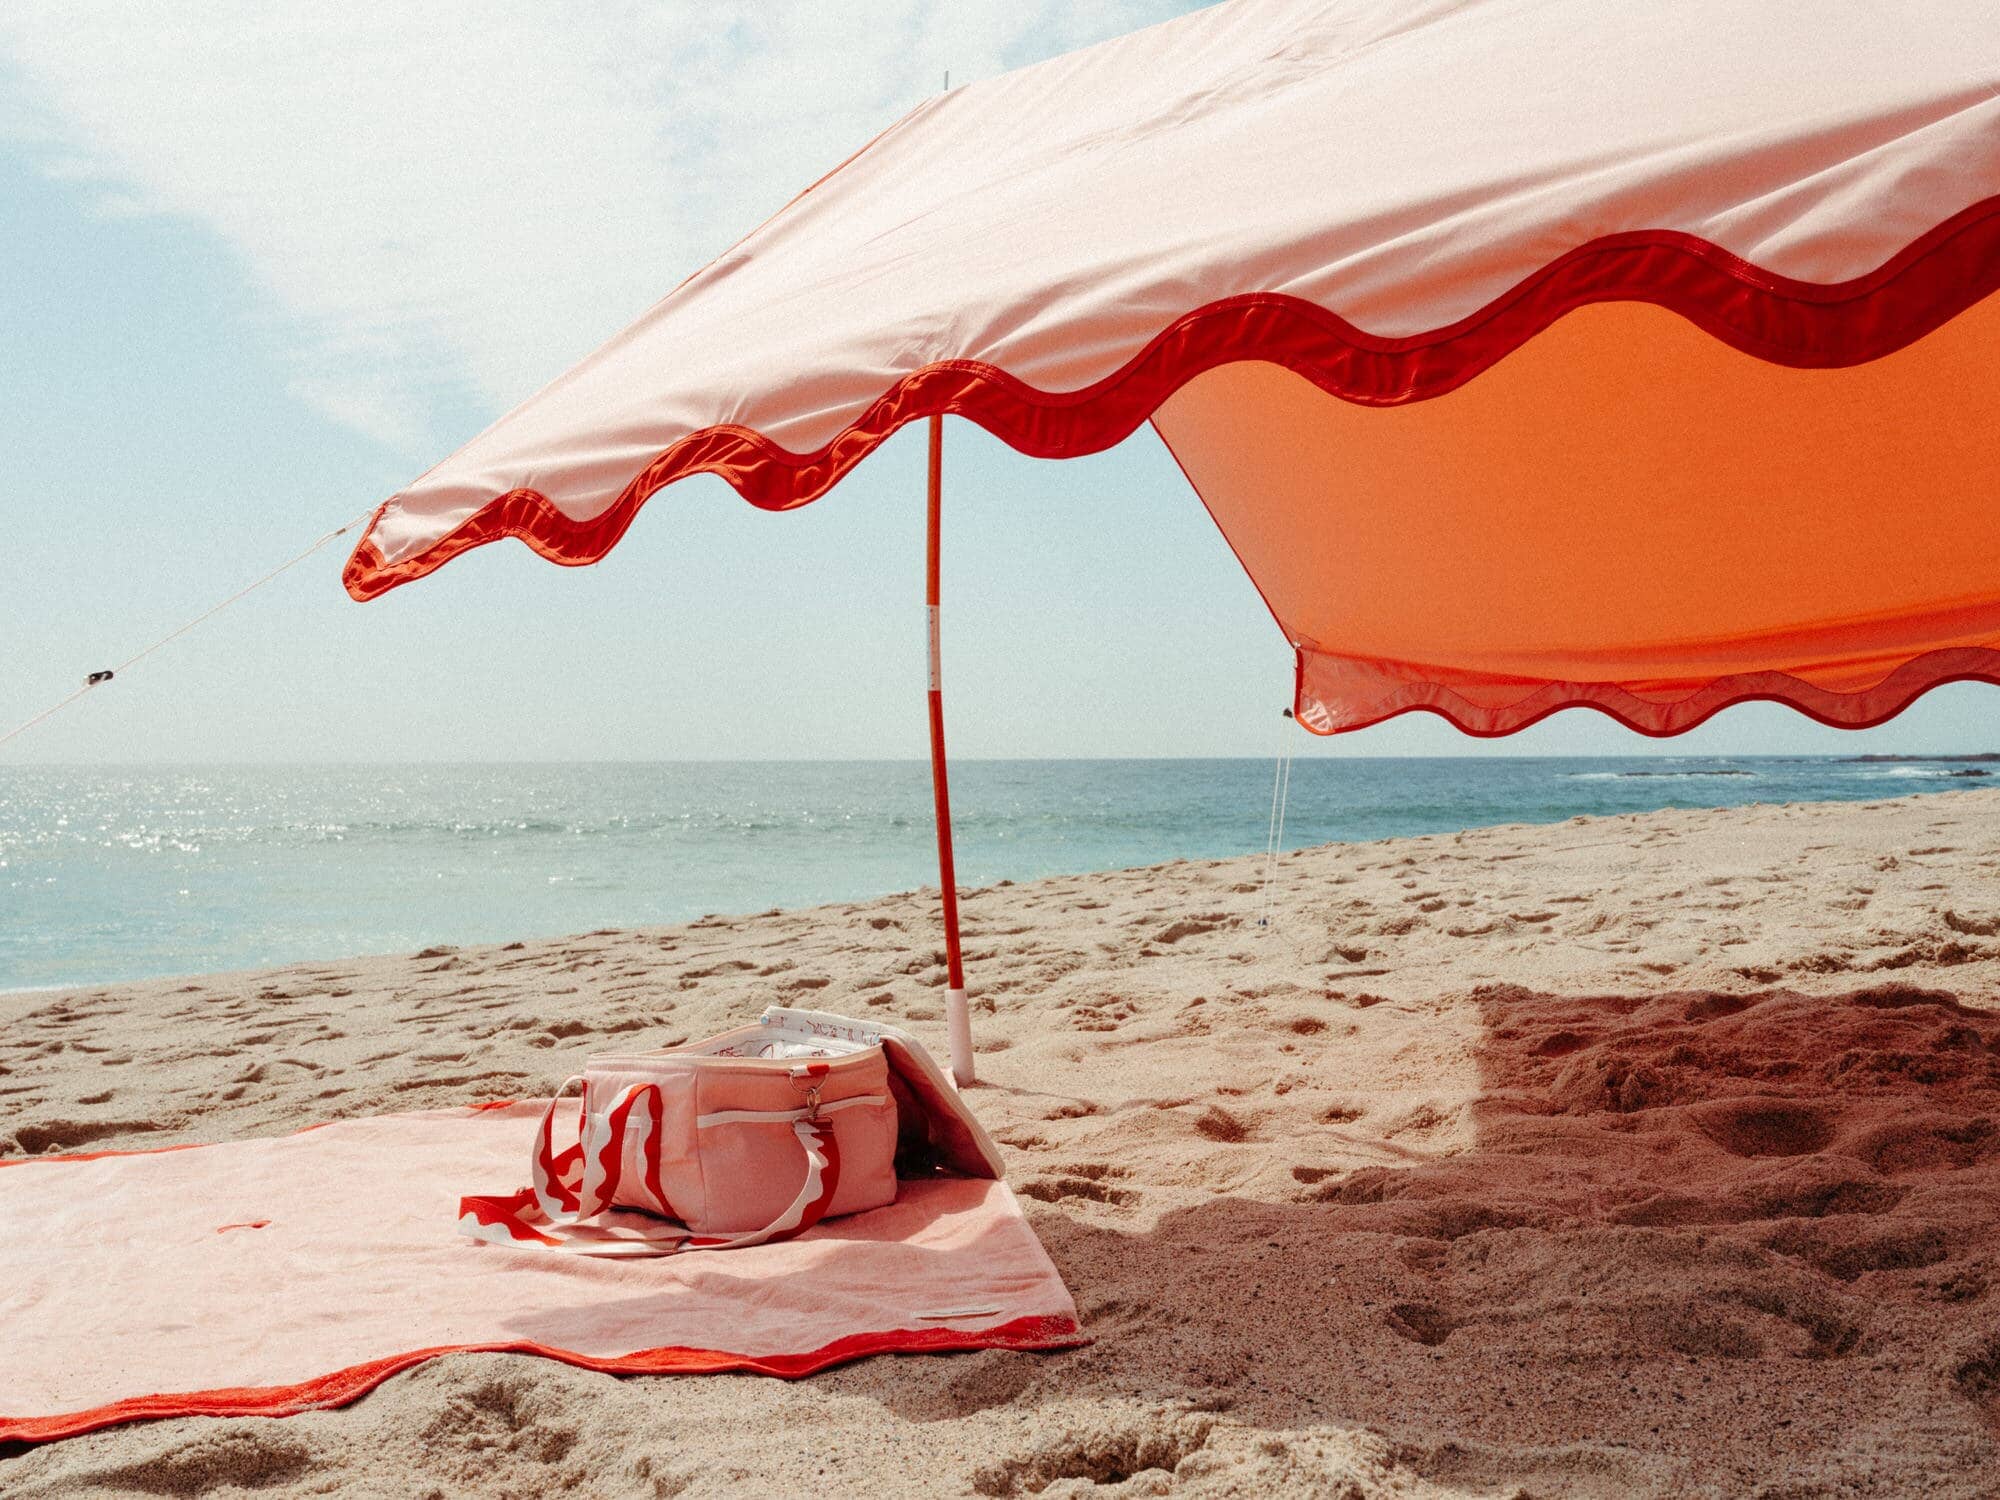 The Premium Beach Tent - Rivie Pink Premium Tent Business & Pleasure Co Aus 